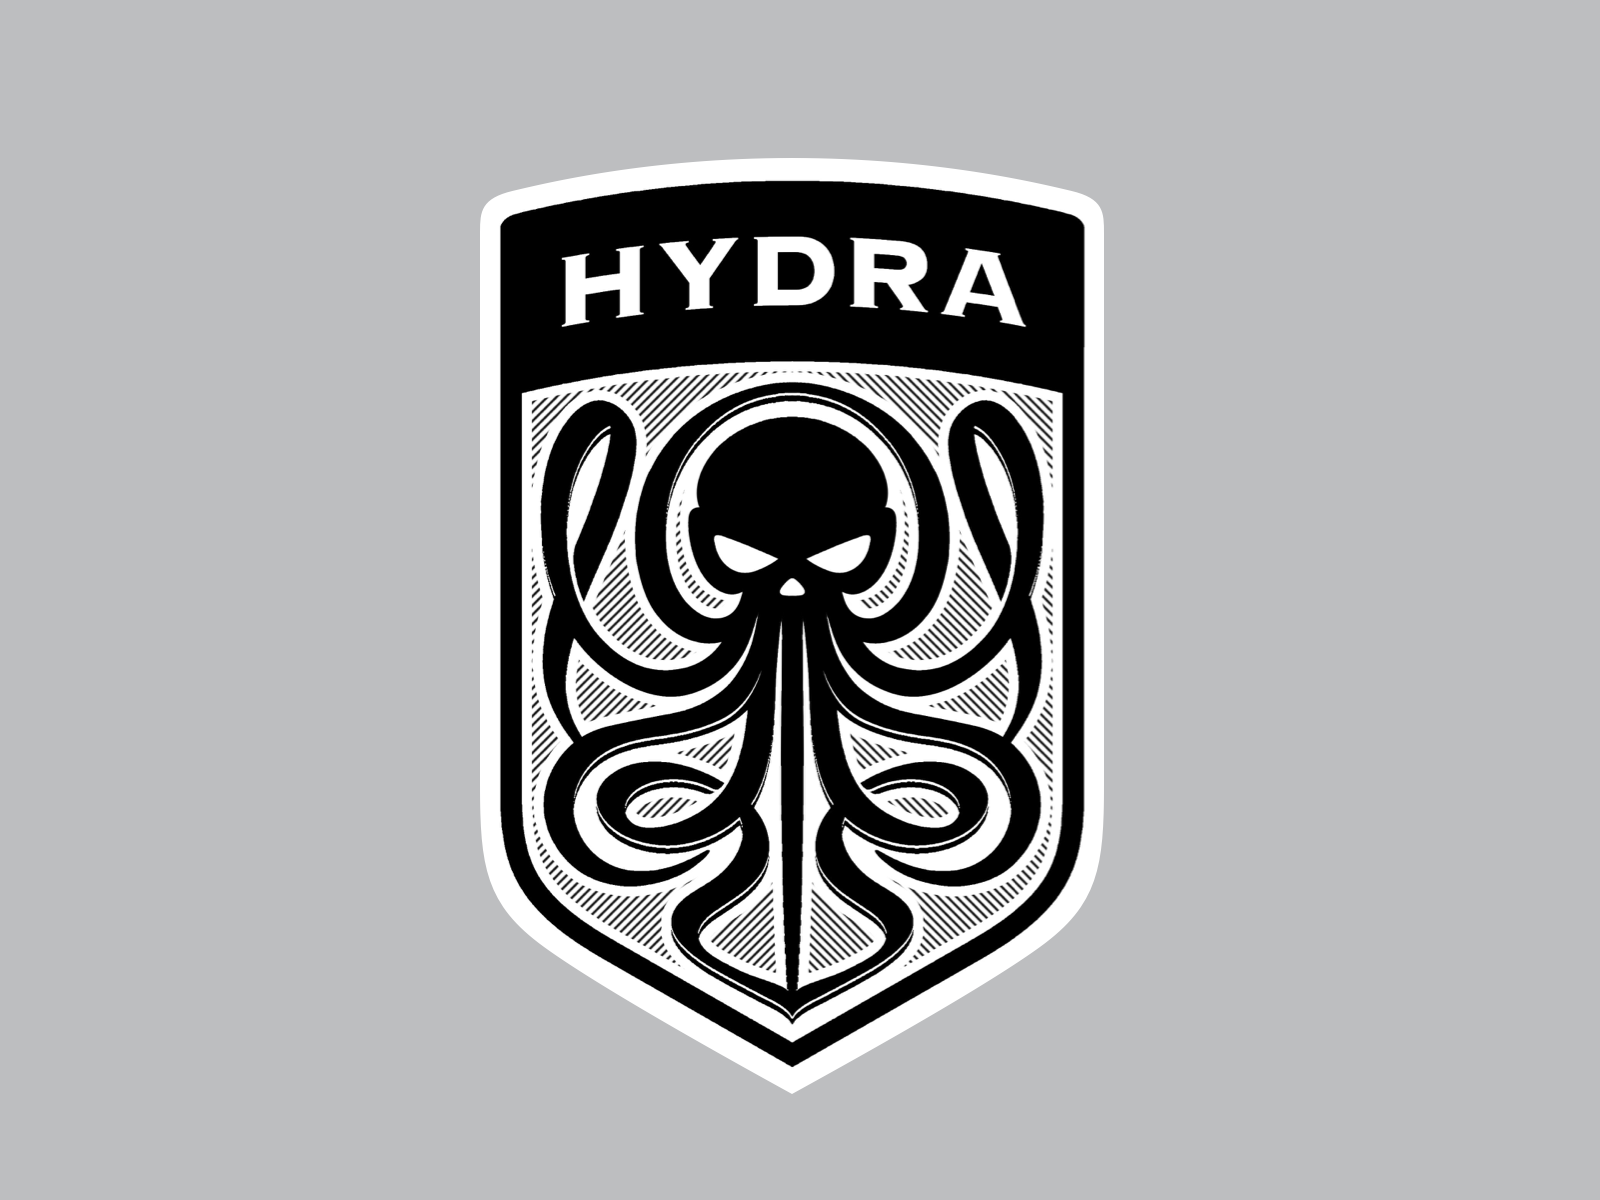 Hydra facebook форум о tor browser попасть на гидру